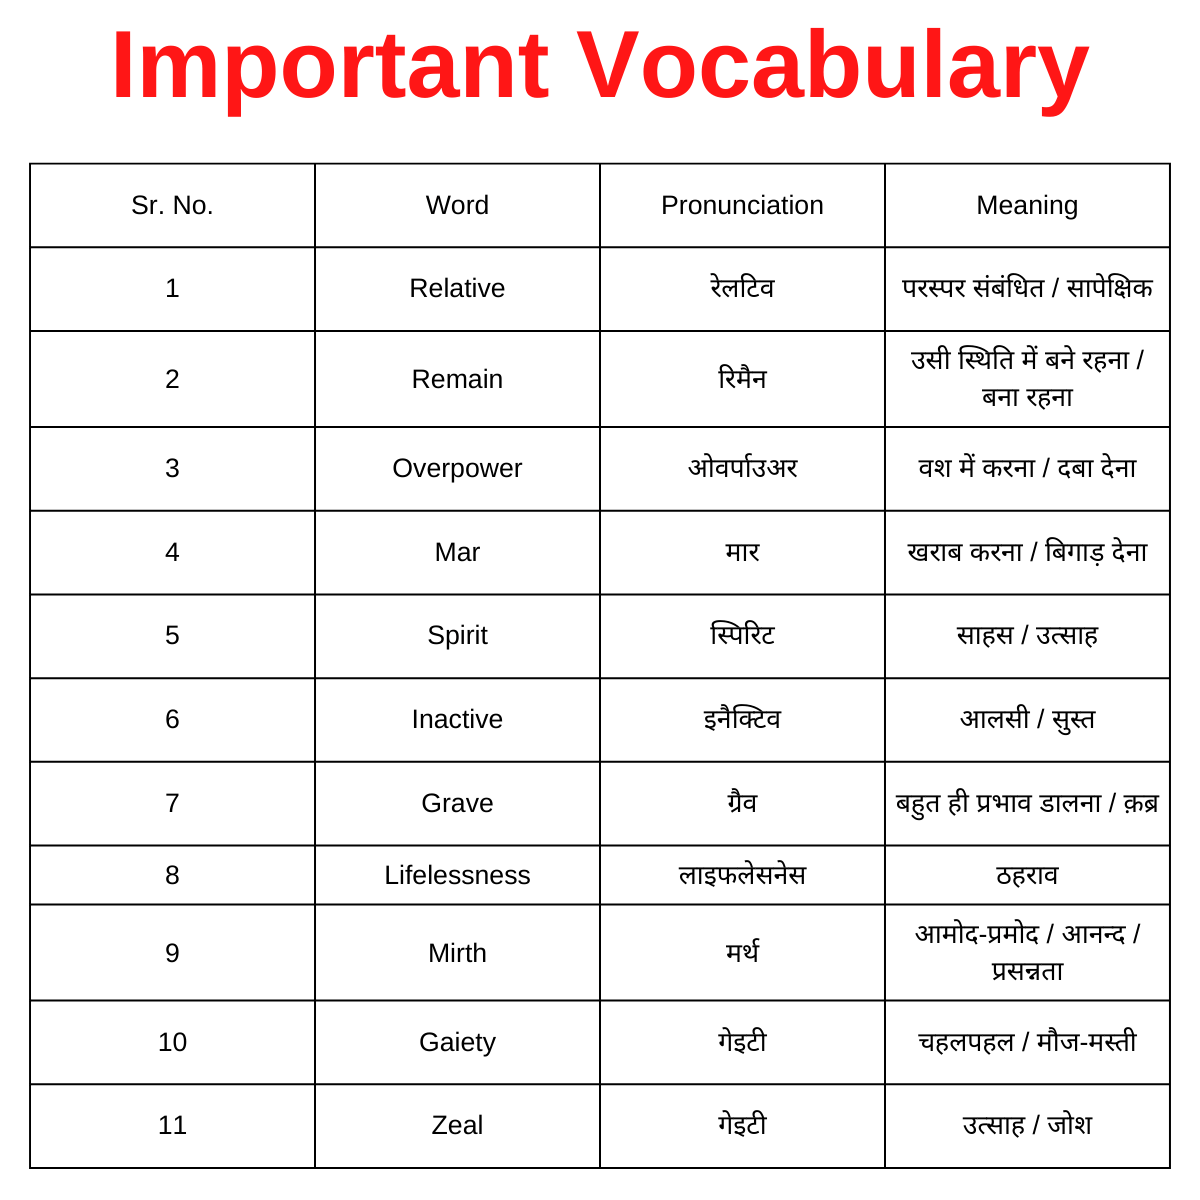 EnglishTak Vocabulary